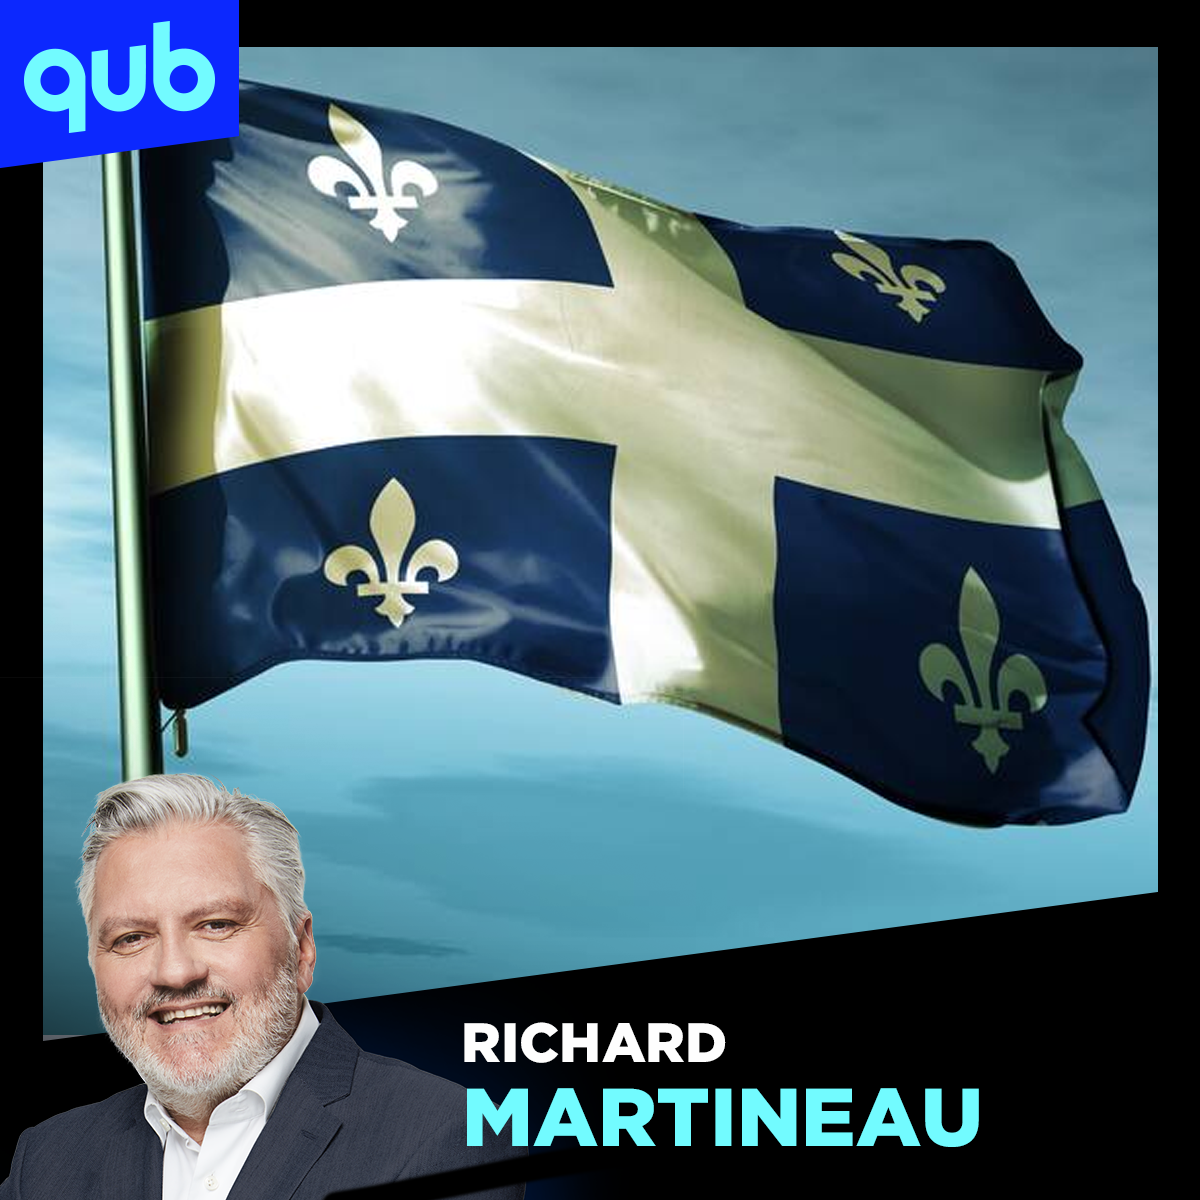 «Les projets au Québec devraient être passés dans un logiciel de démographie», dit Martineau